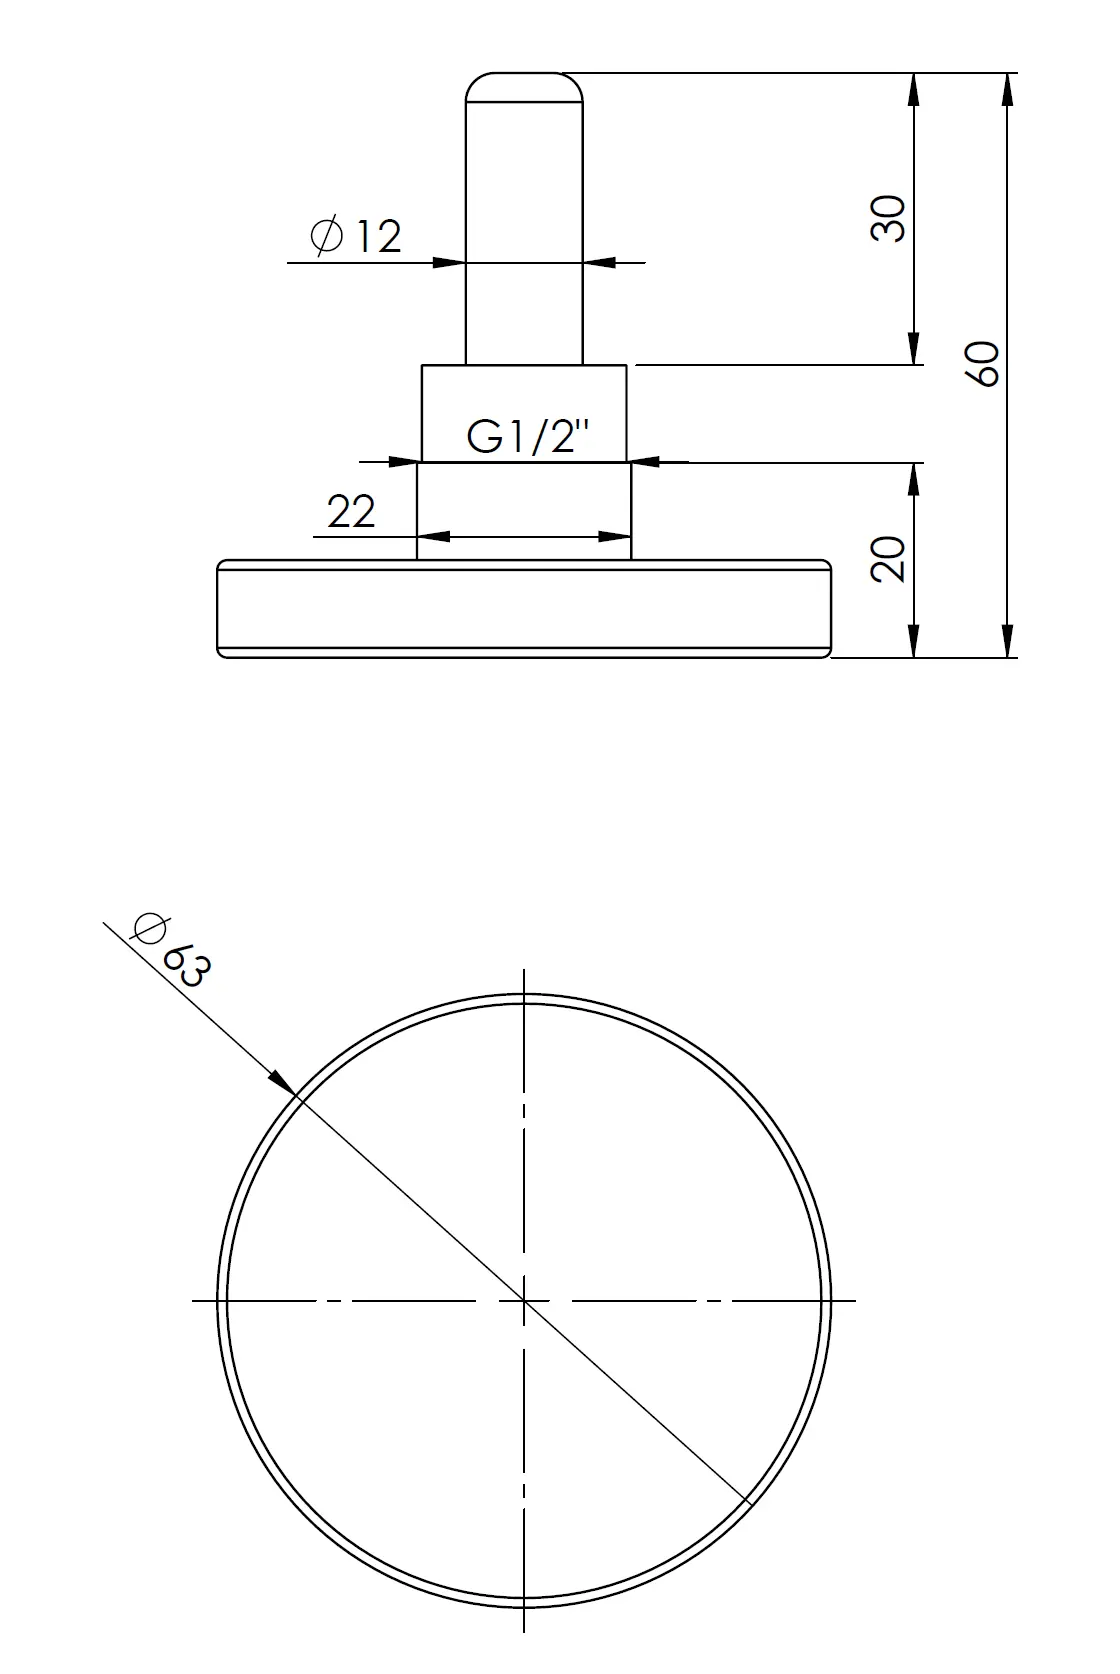 Termometr bimetaliczny BiTh 63, fi63 mm, -20÷60°C, L 40 mm, G1/2", ax, kl. 2 - budowa